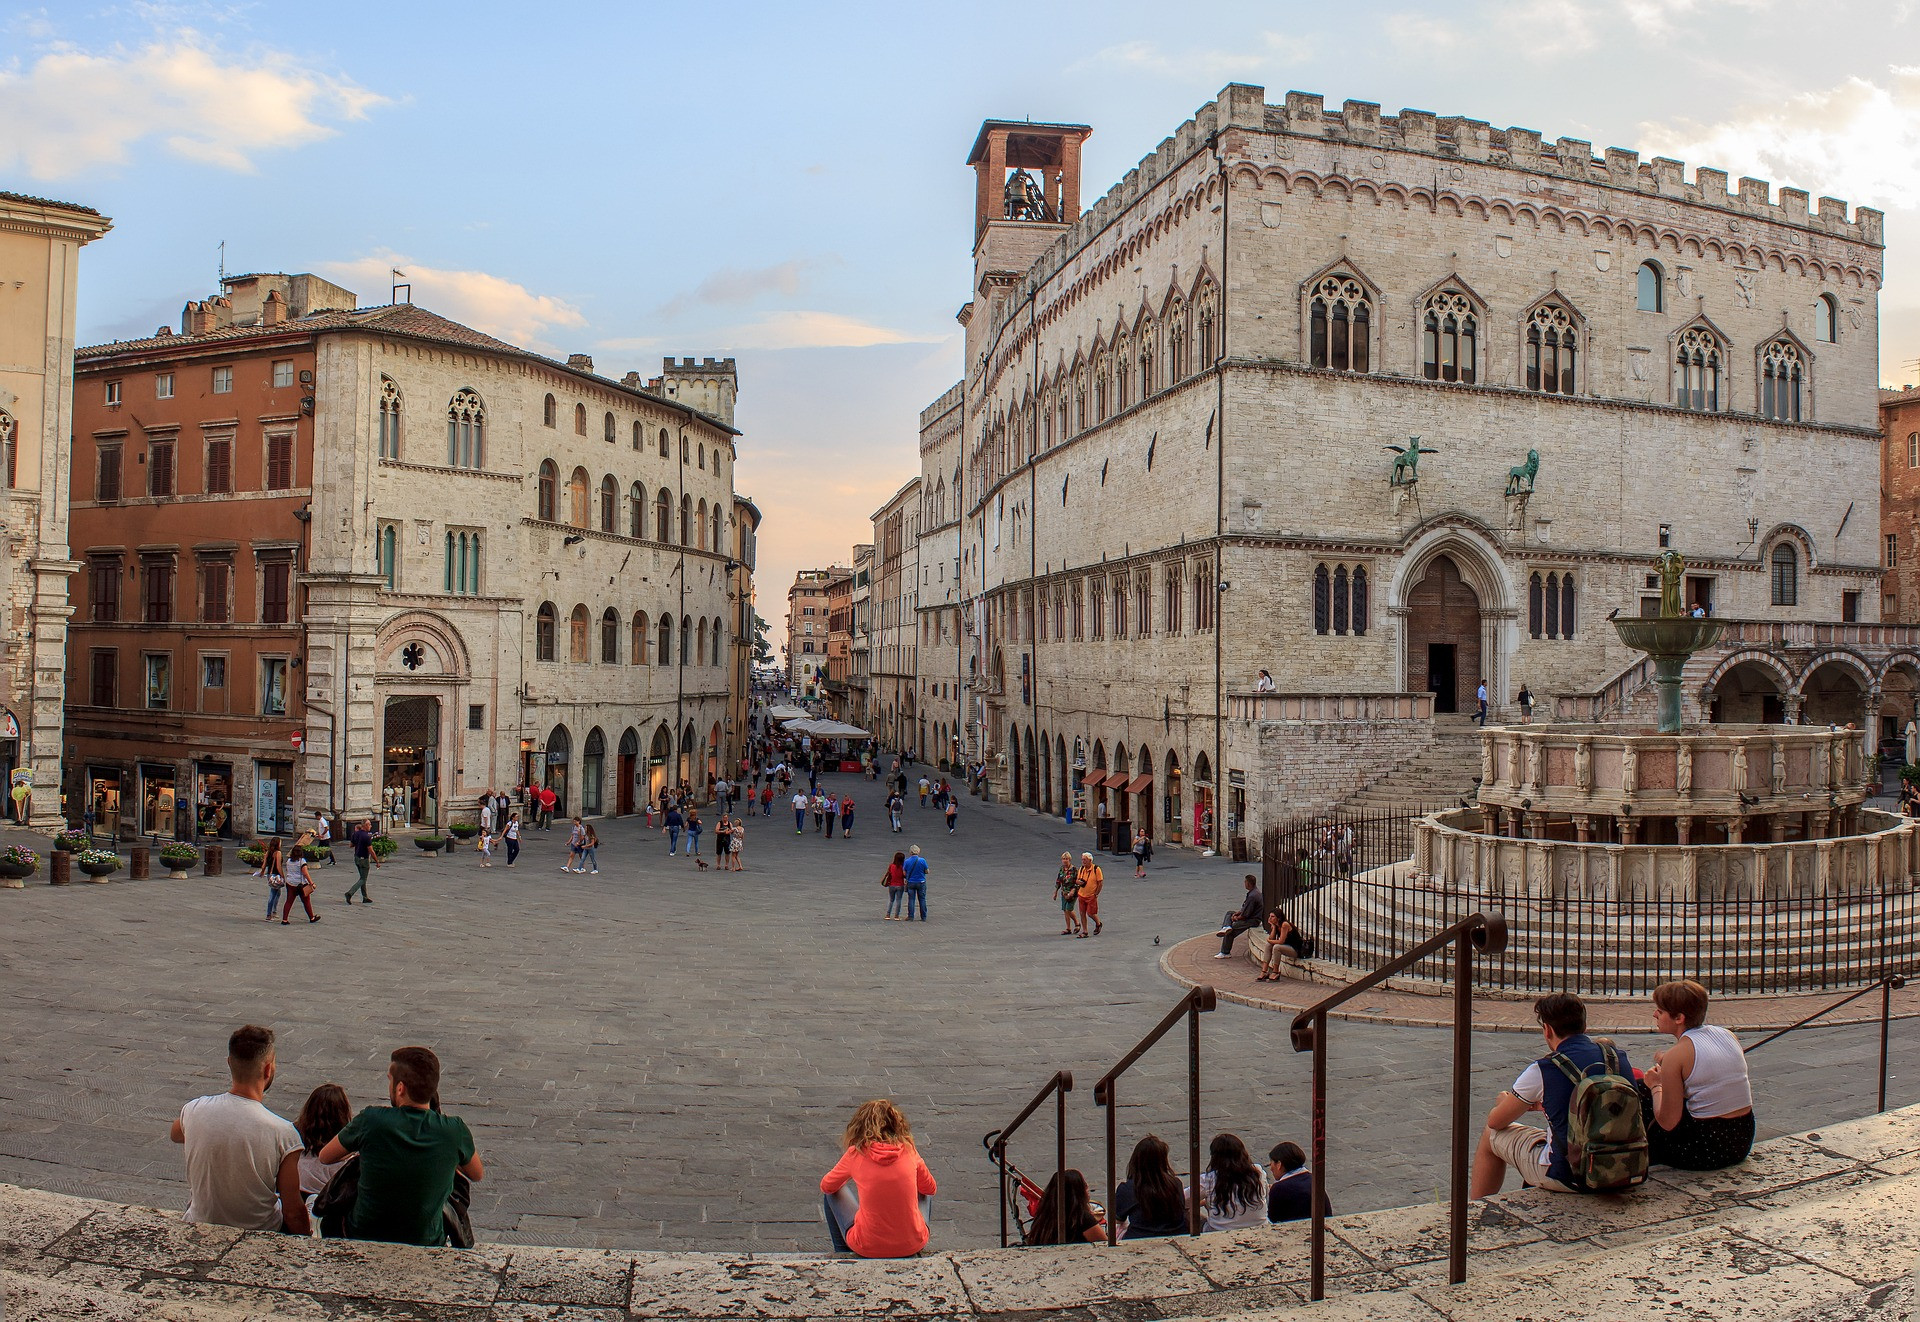 Perugia, hlavné mesto Umbrie, je často v tieni známych miest v Toskánsku, ako je Florencia a Sienna. Stredoveké mesto, pokojnejšie ako jeho toskánski susedia, sa rozkladá na vrcholoch sviežich kopcov a viníc. Serpentínové ulice sú posiate malými reštauráciami, ktoré slúžia miestnemu umbrijskému vínu, syrom a údeninám a atmosféra je oveľa menej turistická než miesta, ktoré by ste si vybrali na typickú taliansku prehliadku.